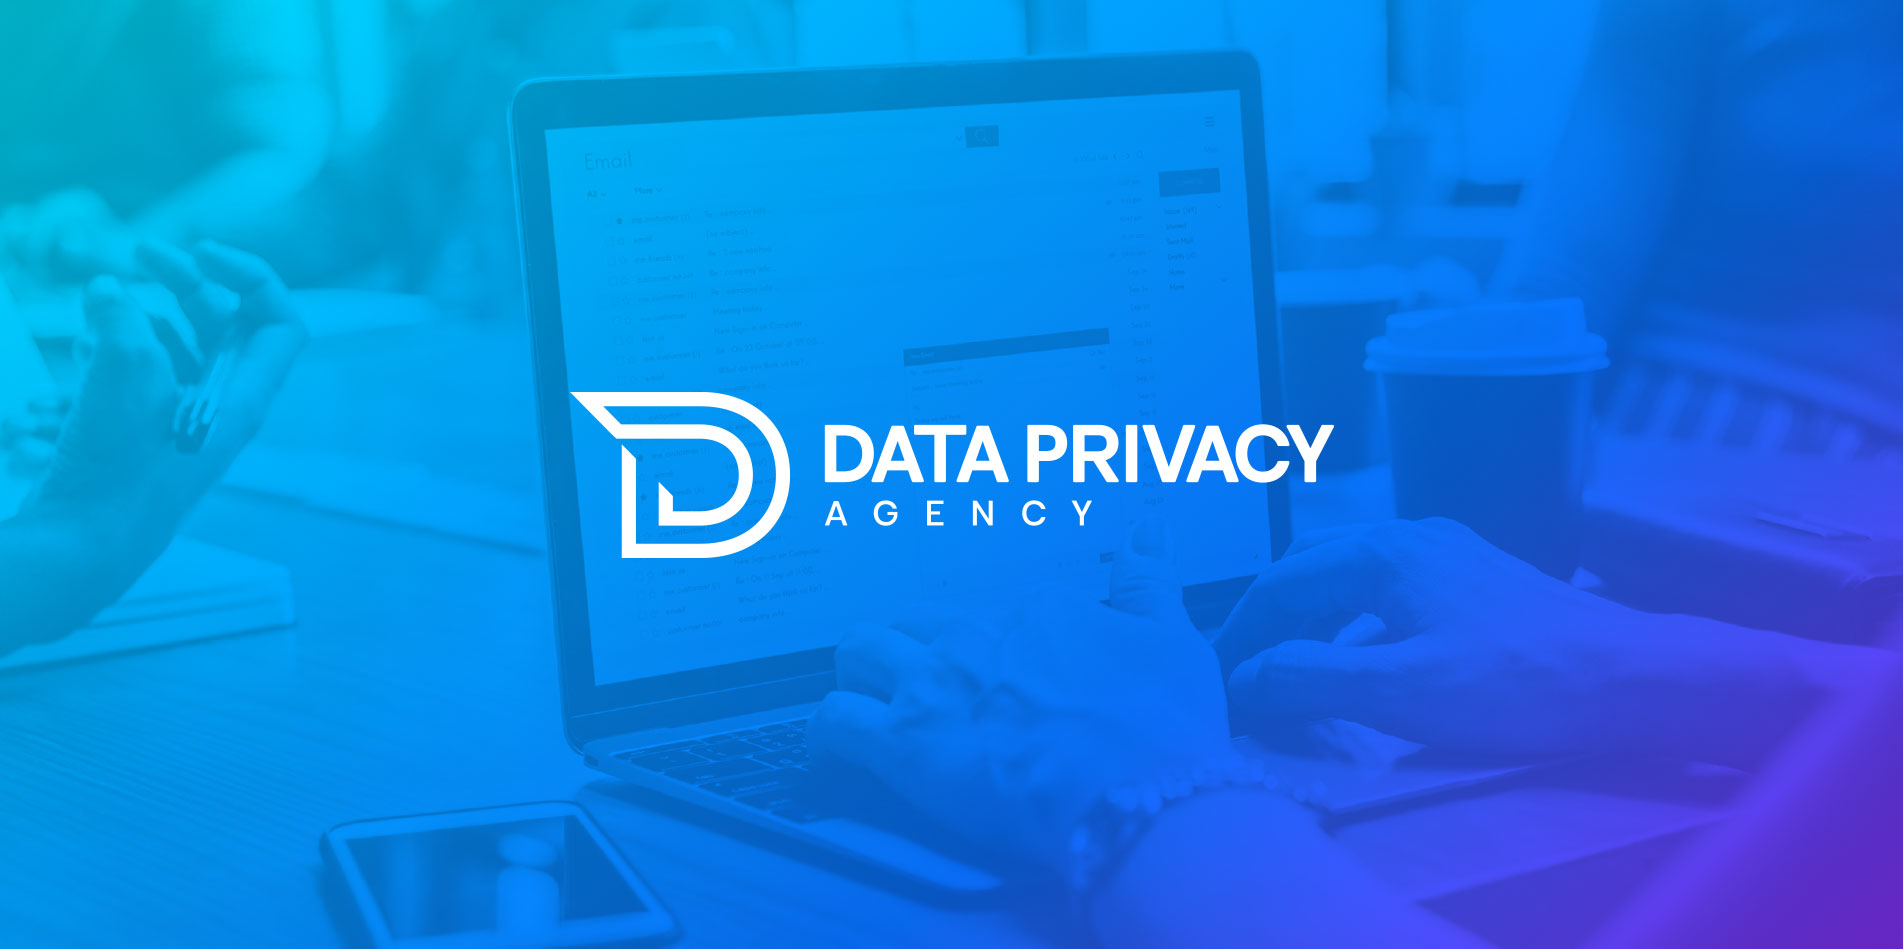 Data Privacy Agency Design